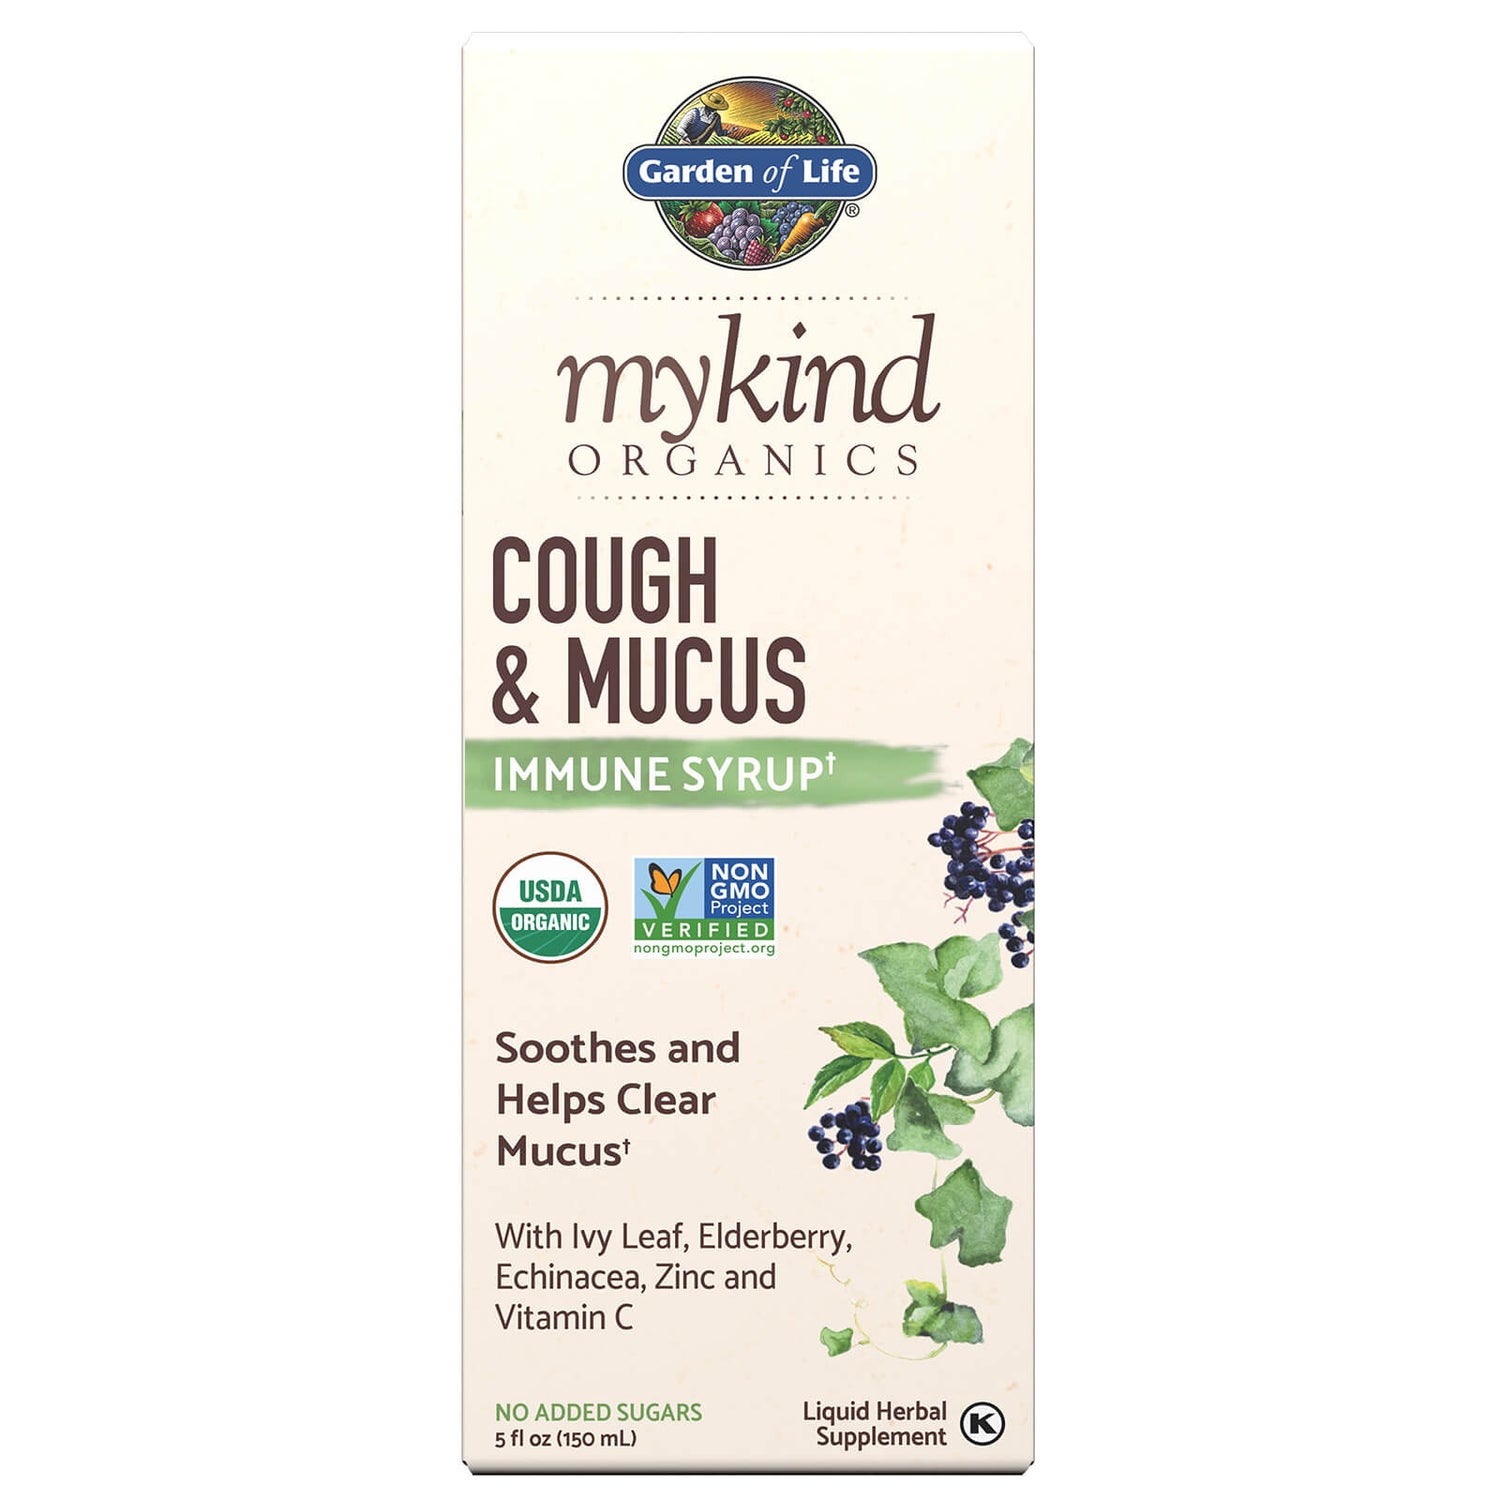 Mykind Organics Hoest & Slijm immuunsiroop 150 ml Vloeistof